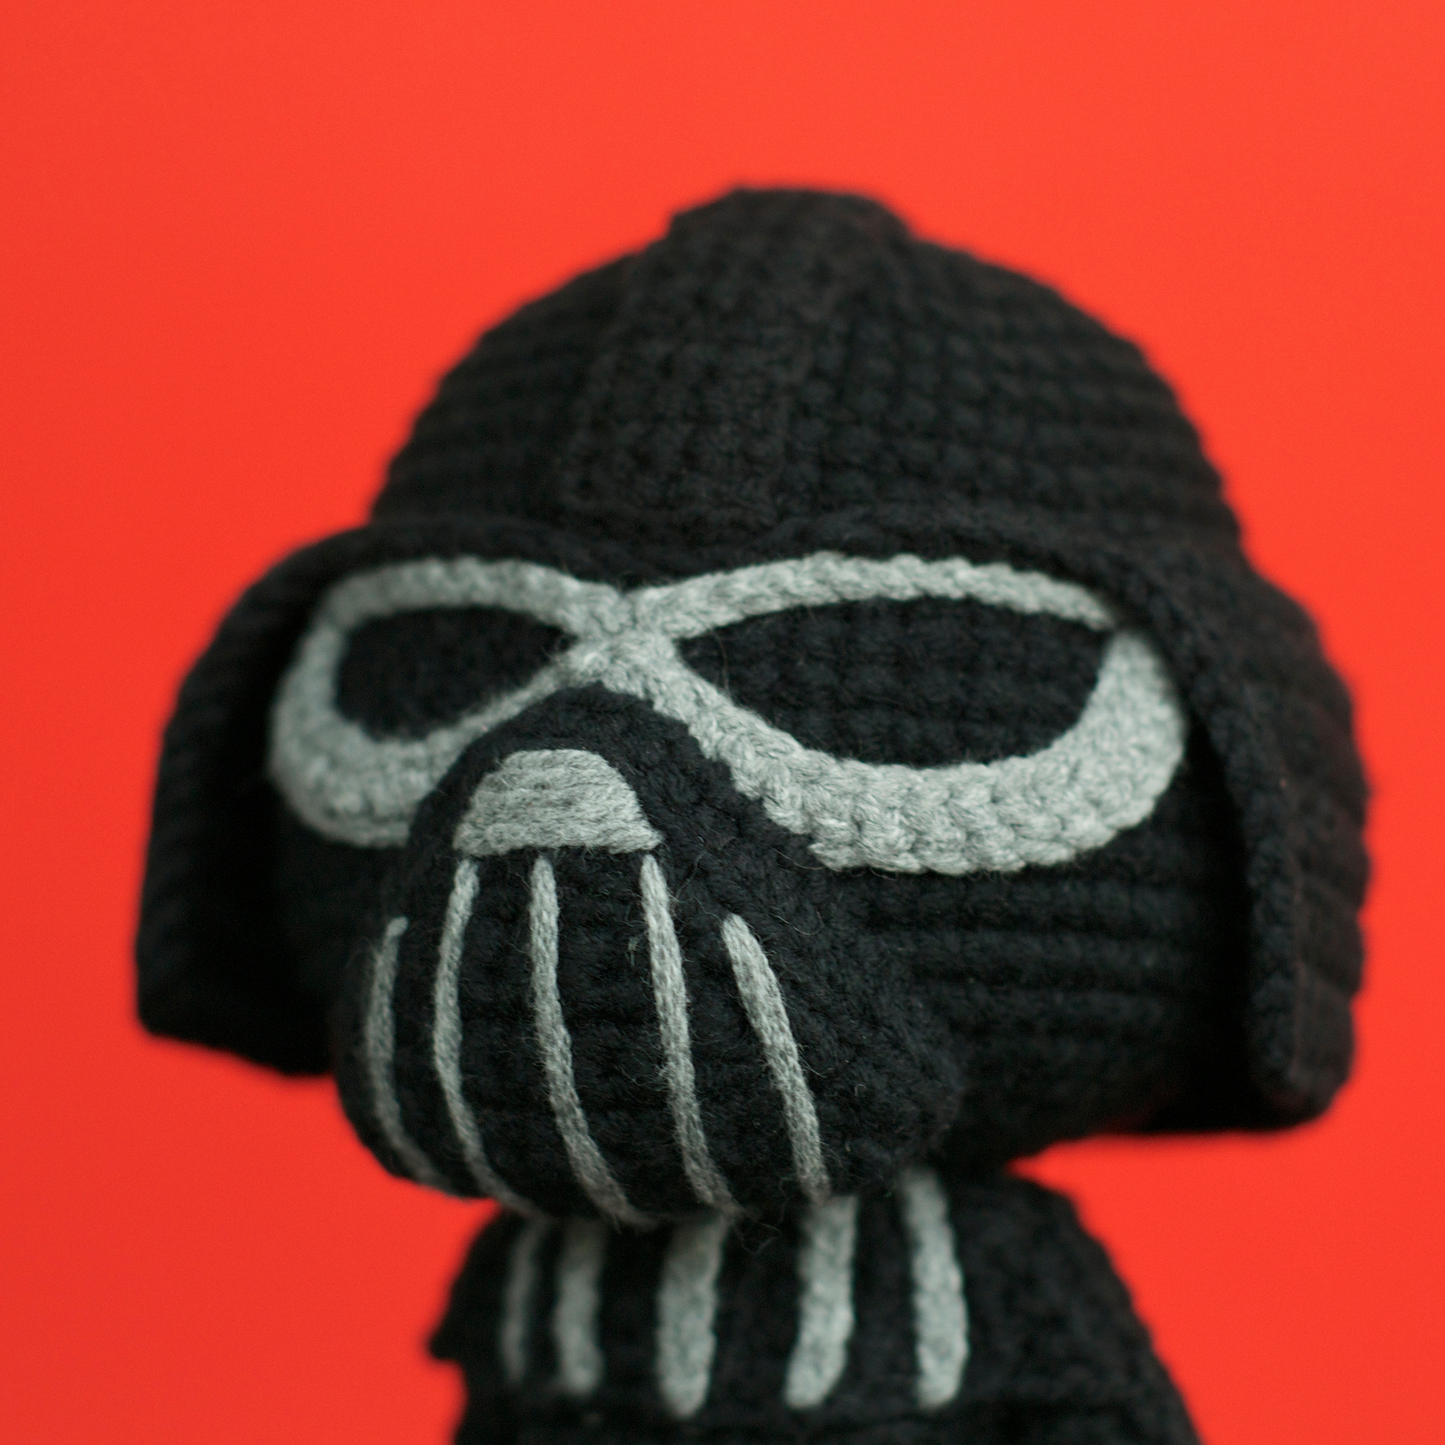 Chibi Darth Vader Crochet Pattern